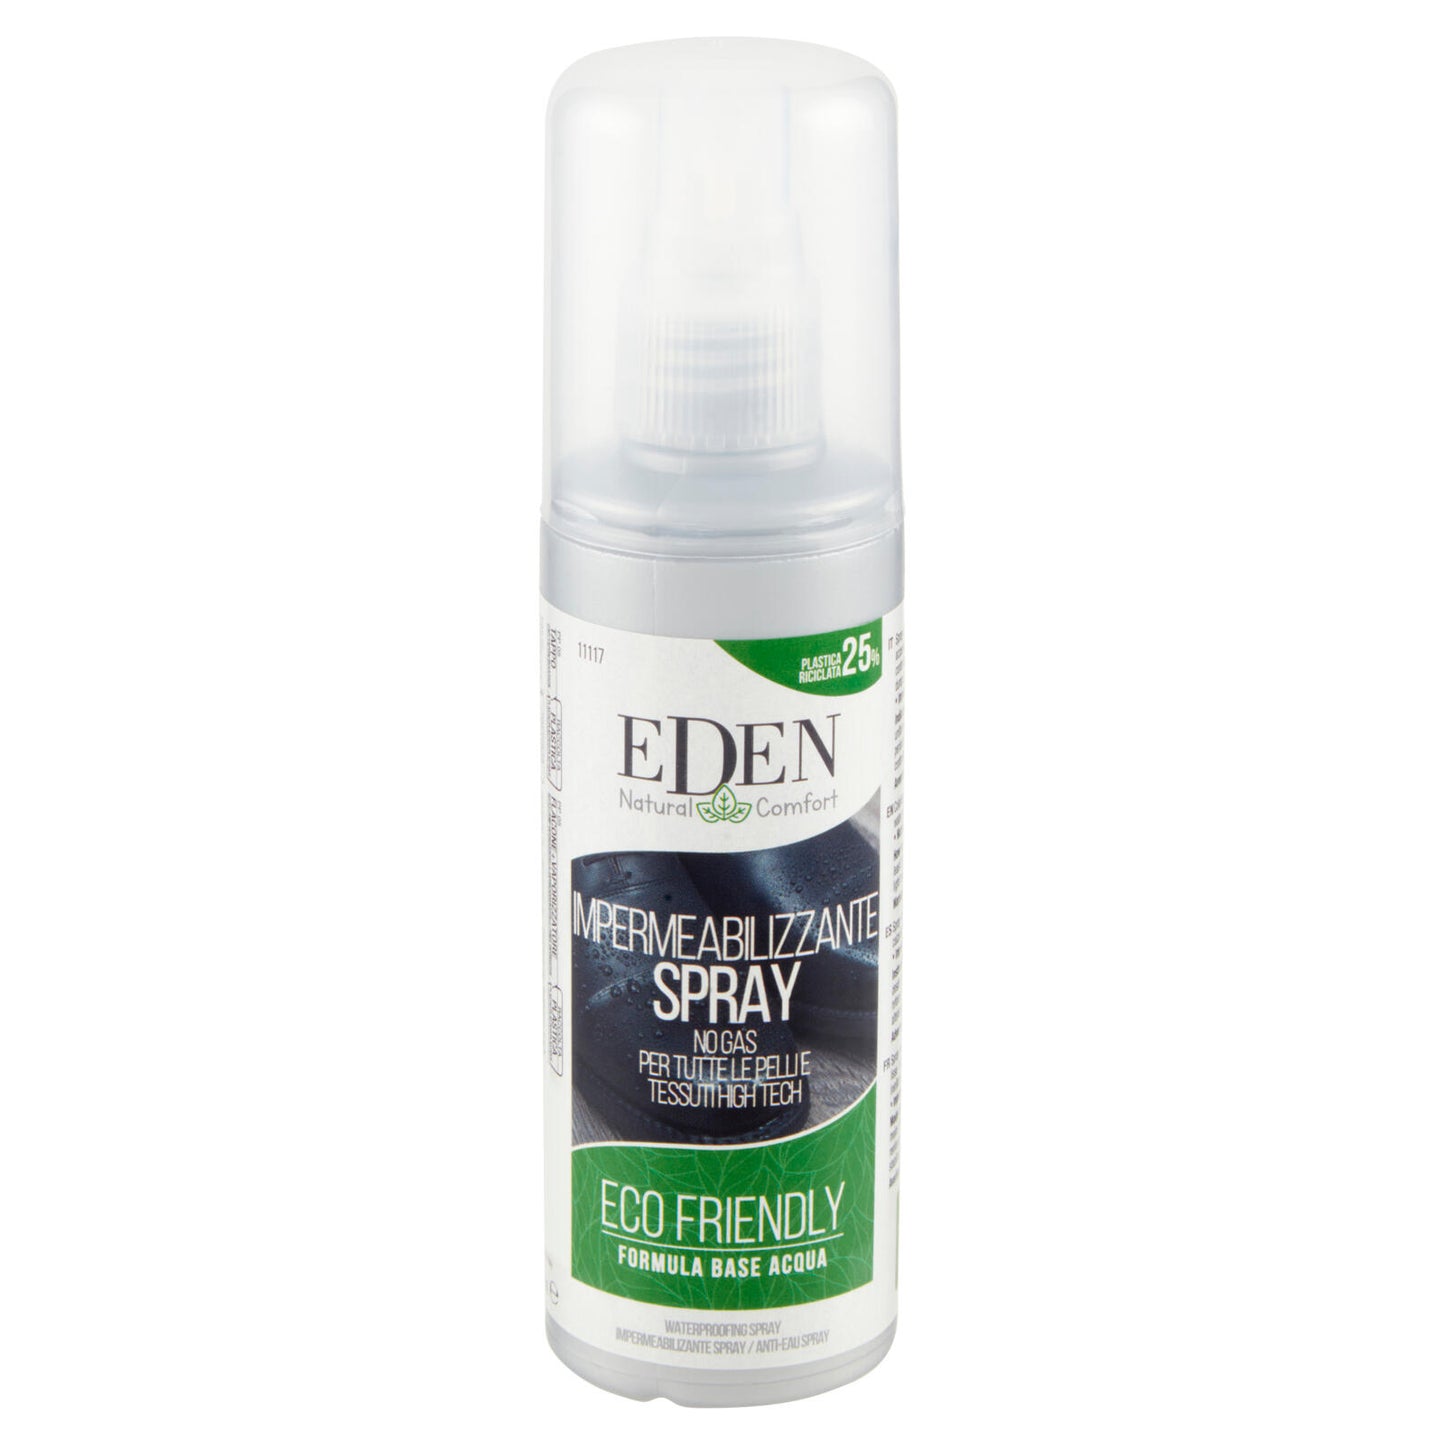 Eden Natural Comfort Impermeabilizzante Spray No Gas per Tutte le Pelli e  Tessuti High Tech 100 ml ->